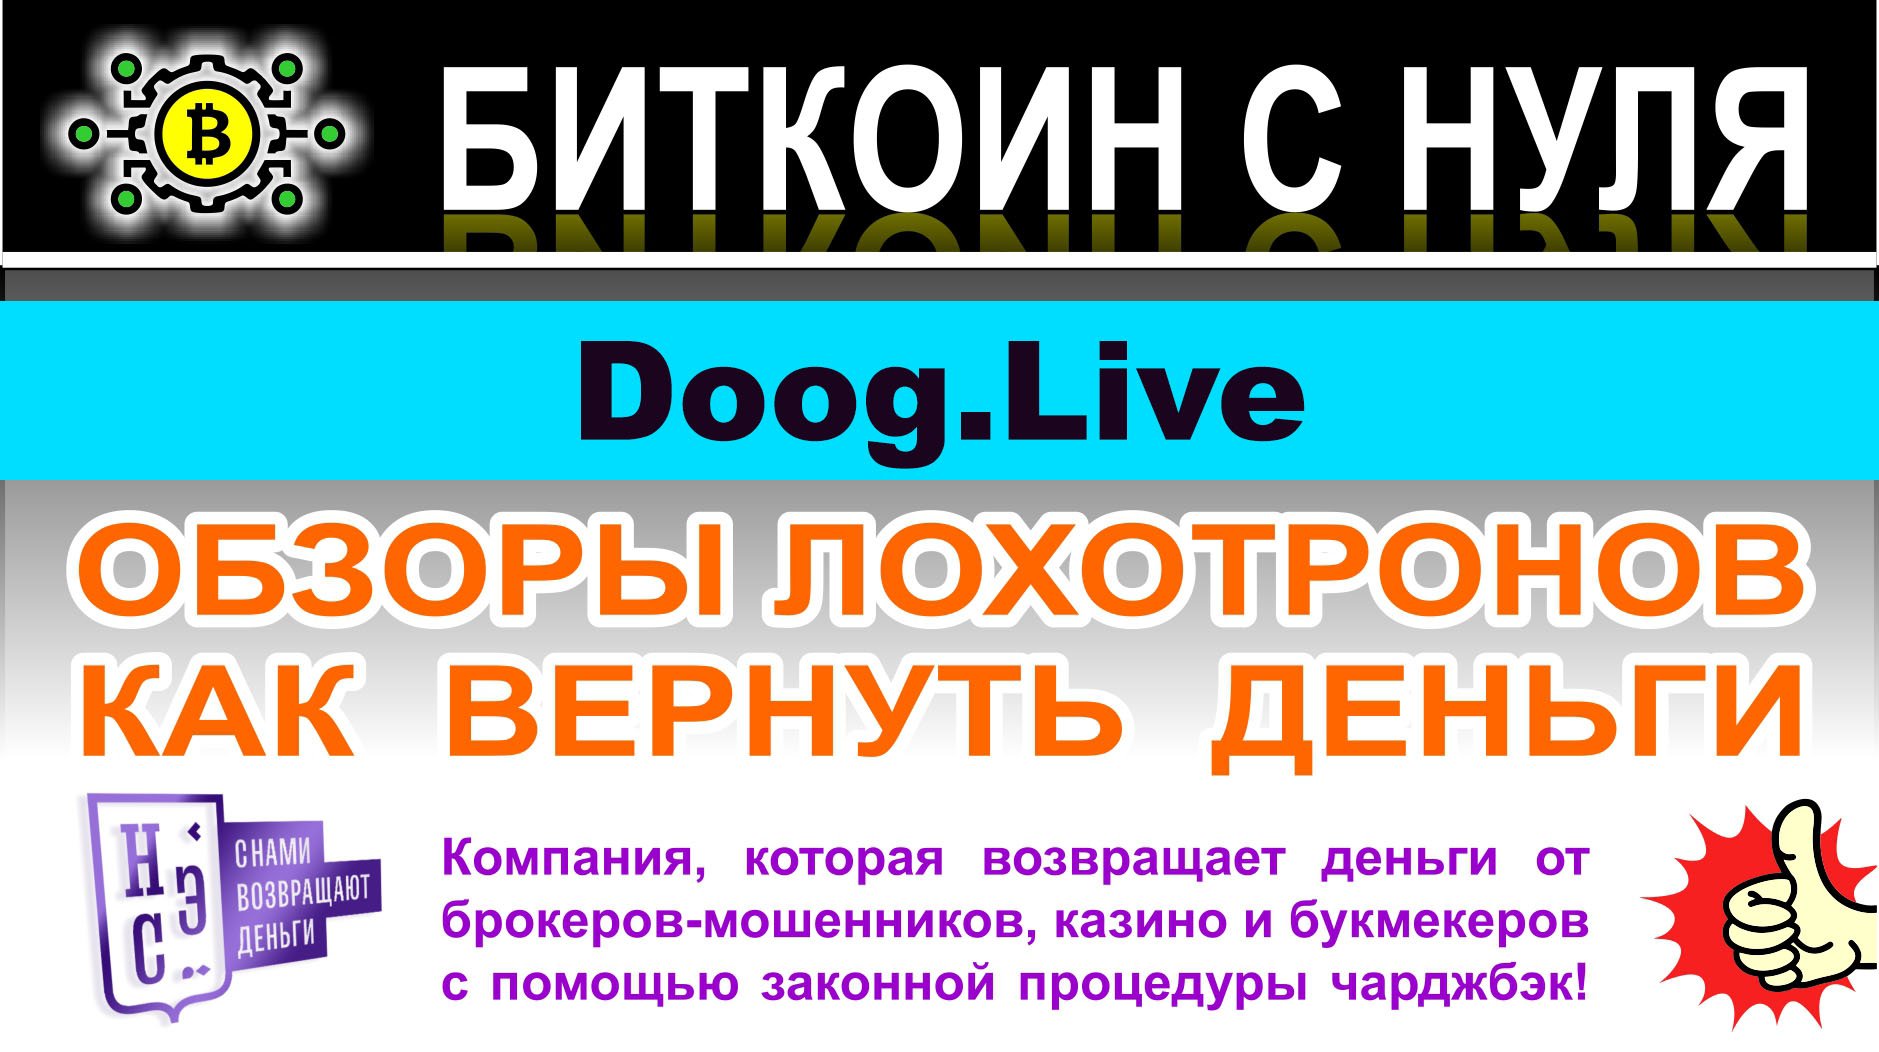 Doog.Live — снова реинкарнация заморского лохотрона. Опасно сотрудничать. Отзывы.